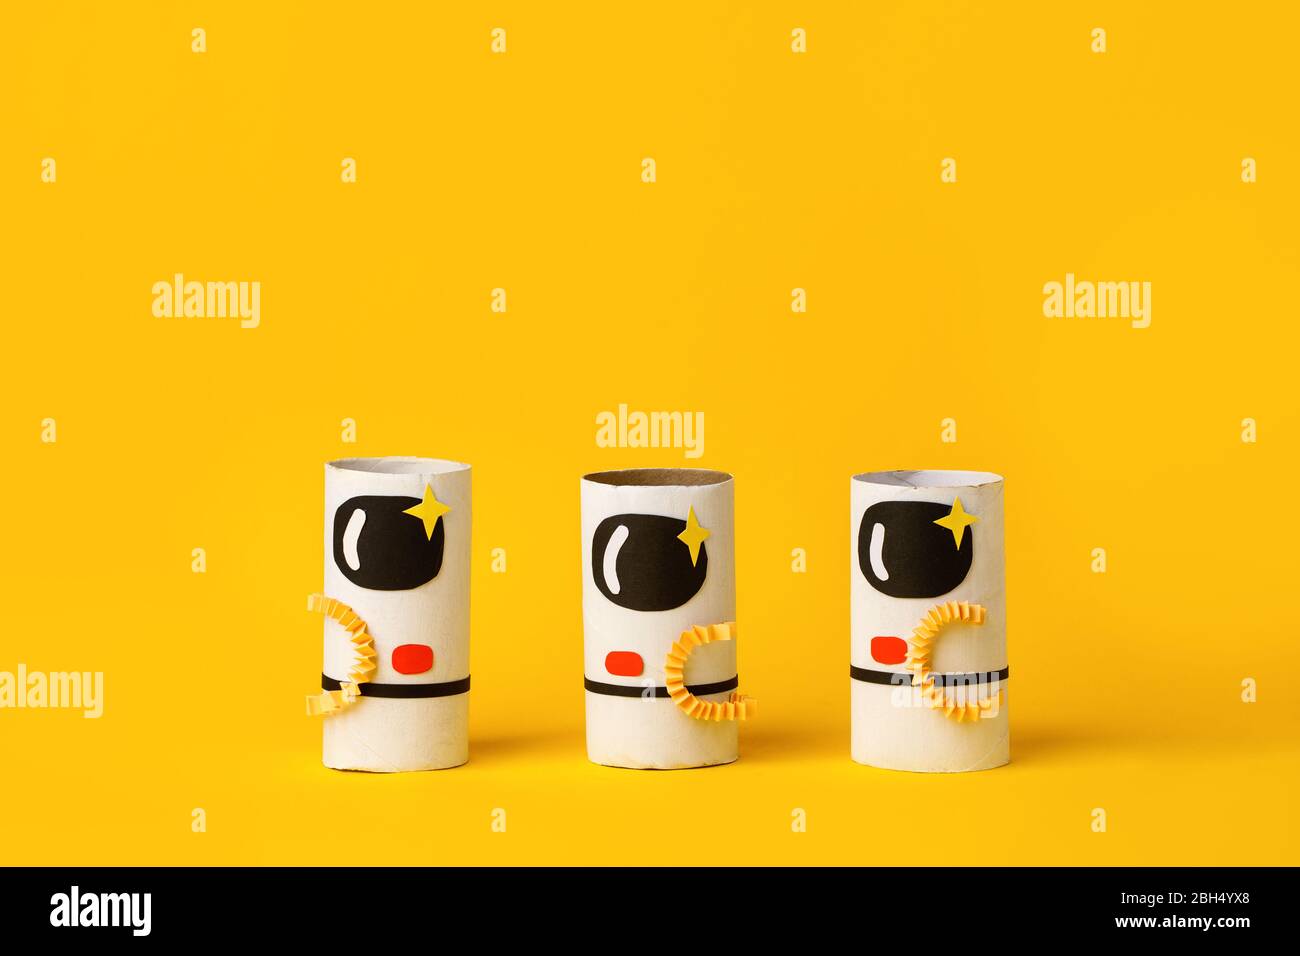 Spielzeug Astronaut auf gelbem Hintergrund mit Kopie Raum für Text. Konzept der Business-Launch, Start-up, Handwerk, diy, kreative Idee aus Toilettenröhre, re Stockfoto